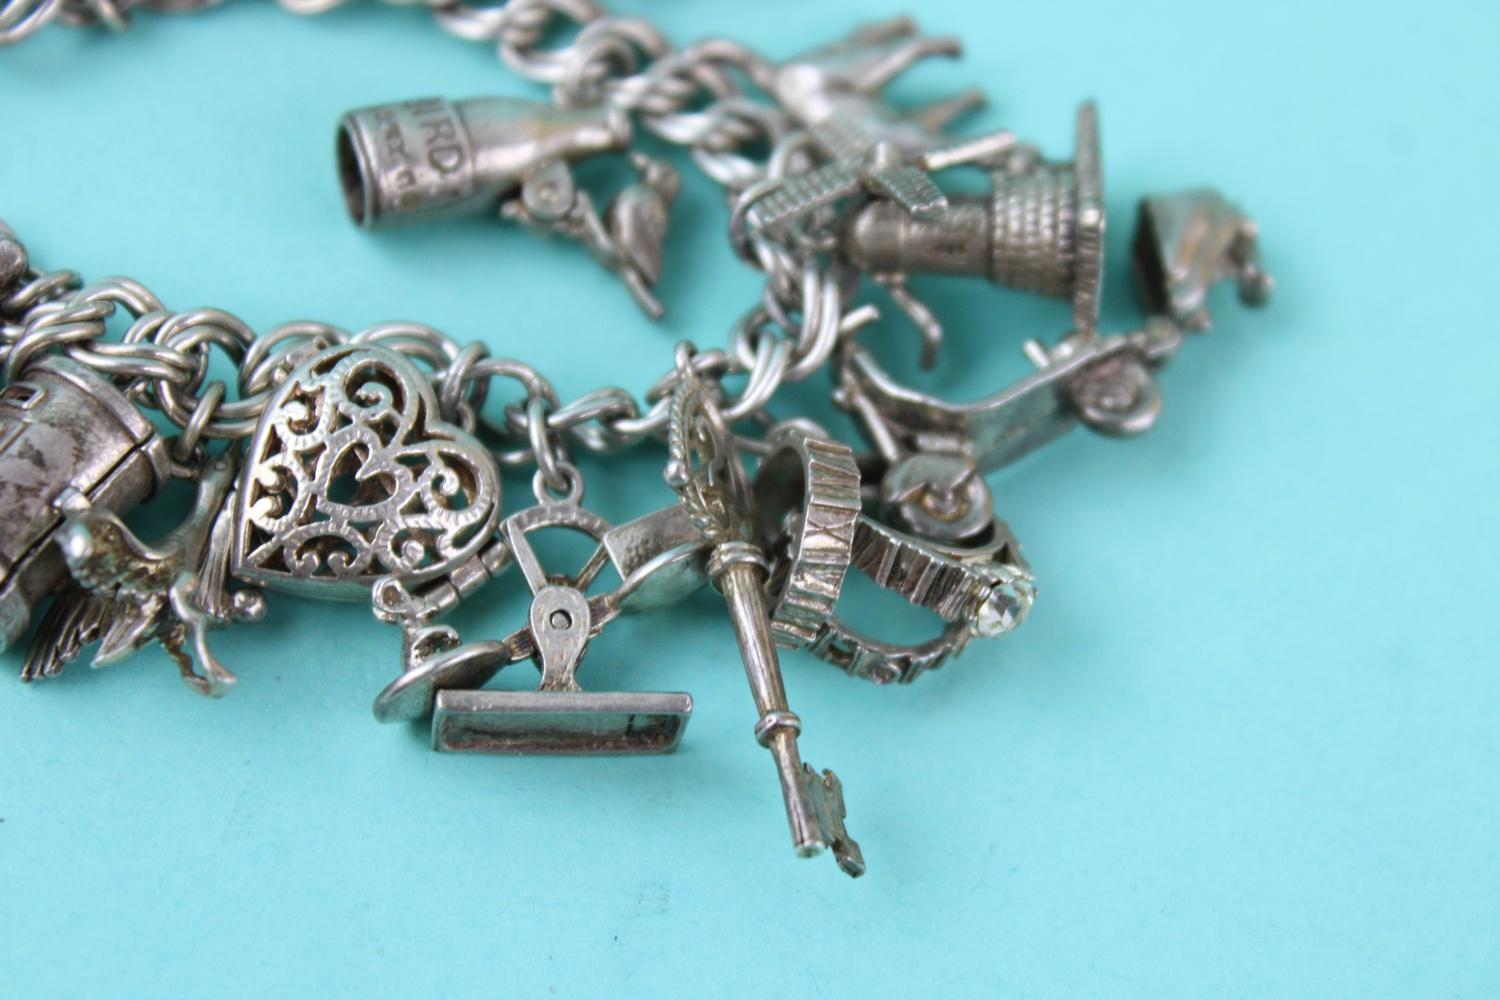 Vintage heart padlock loaded sterling silver charm bracelet (72g) - Image 3 of 3